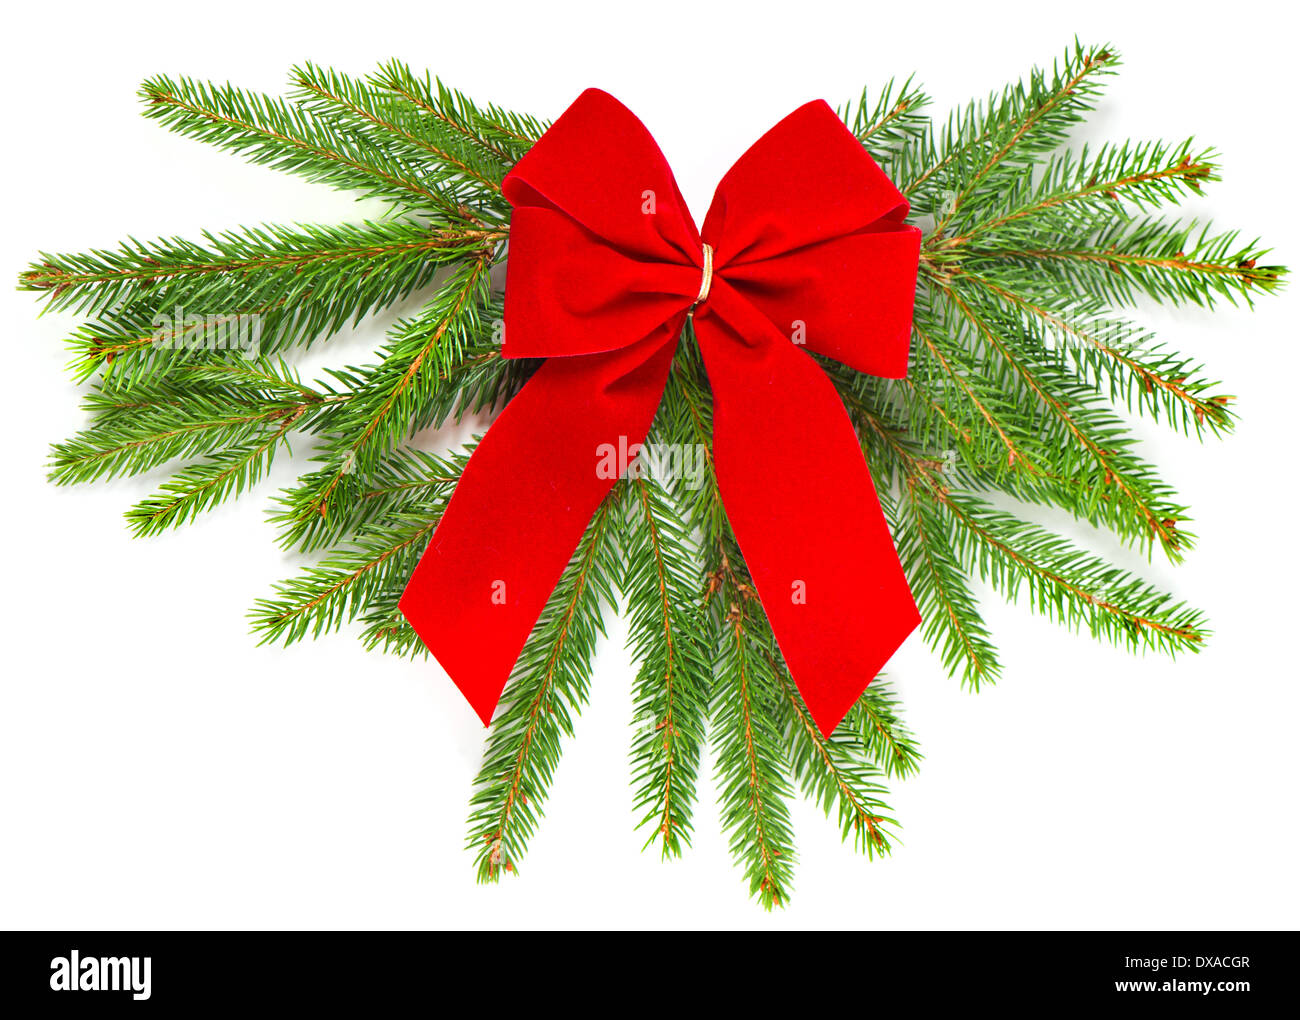 Weihnachtsbaum Zweig mit rotem Band Stockfoto